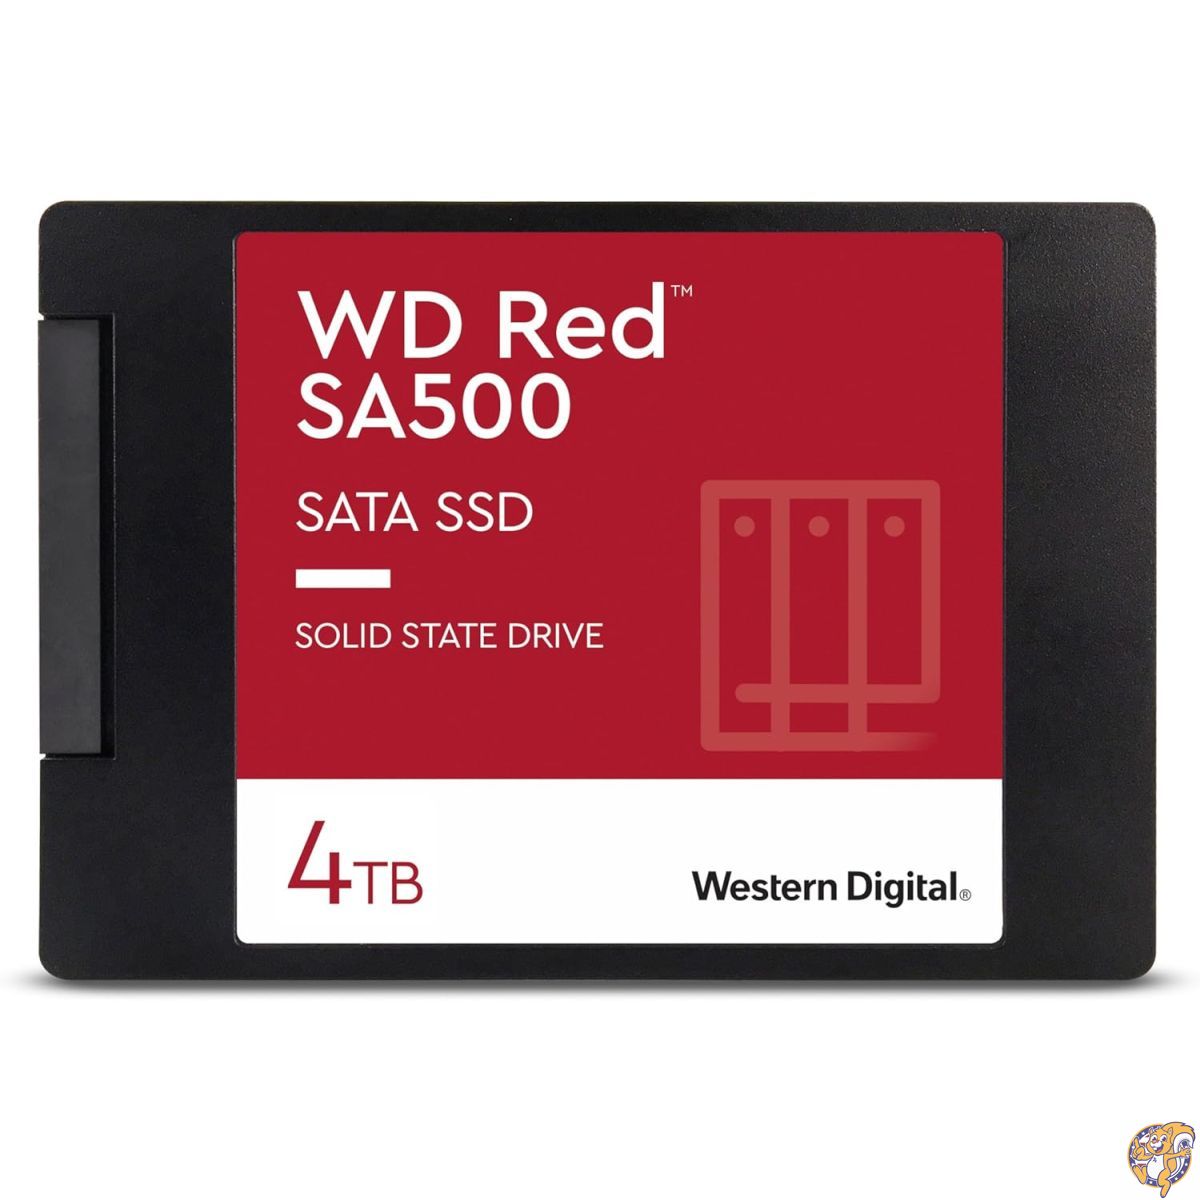 楽天アメリカ輸入ランドウエスタンデジタル WesternDigital SSD WD Red SA500 SATA 4.0TBWD WDS400T1R0A